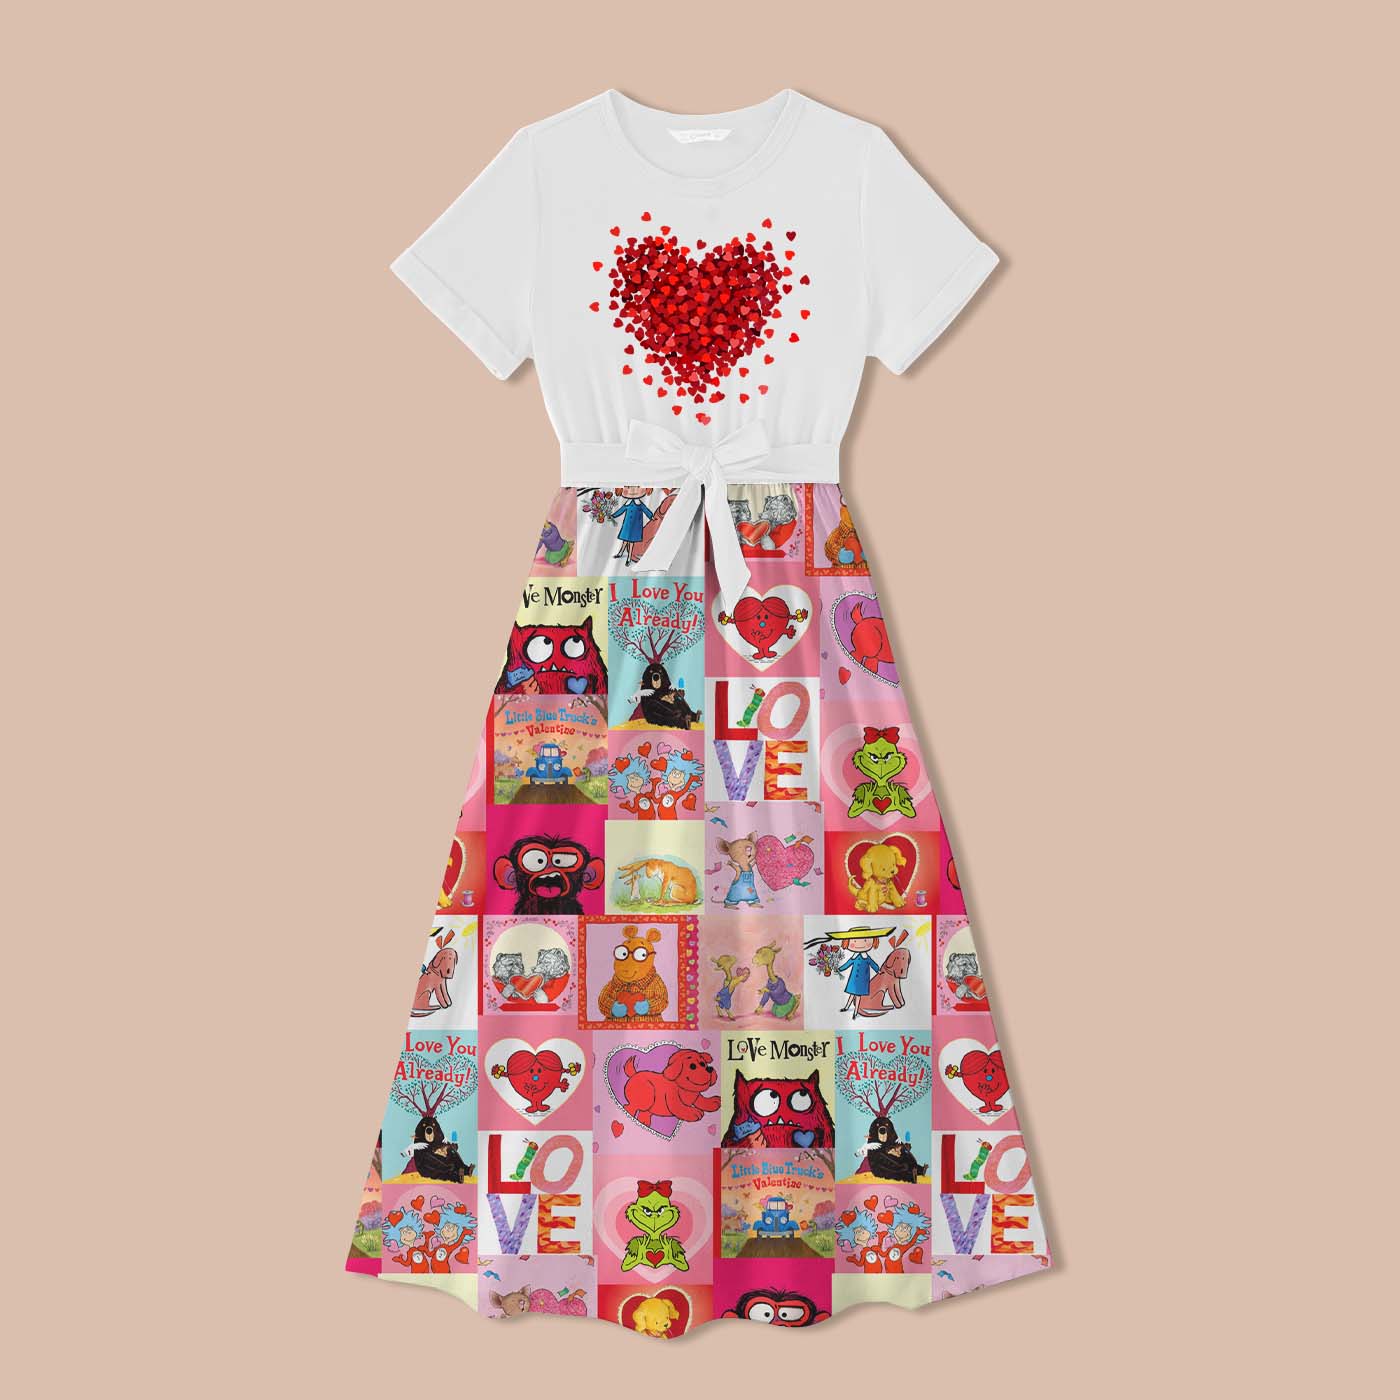 Let Love Fill Your Heart Teacher One Piece Dress